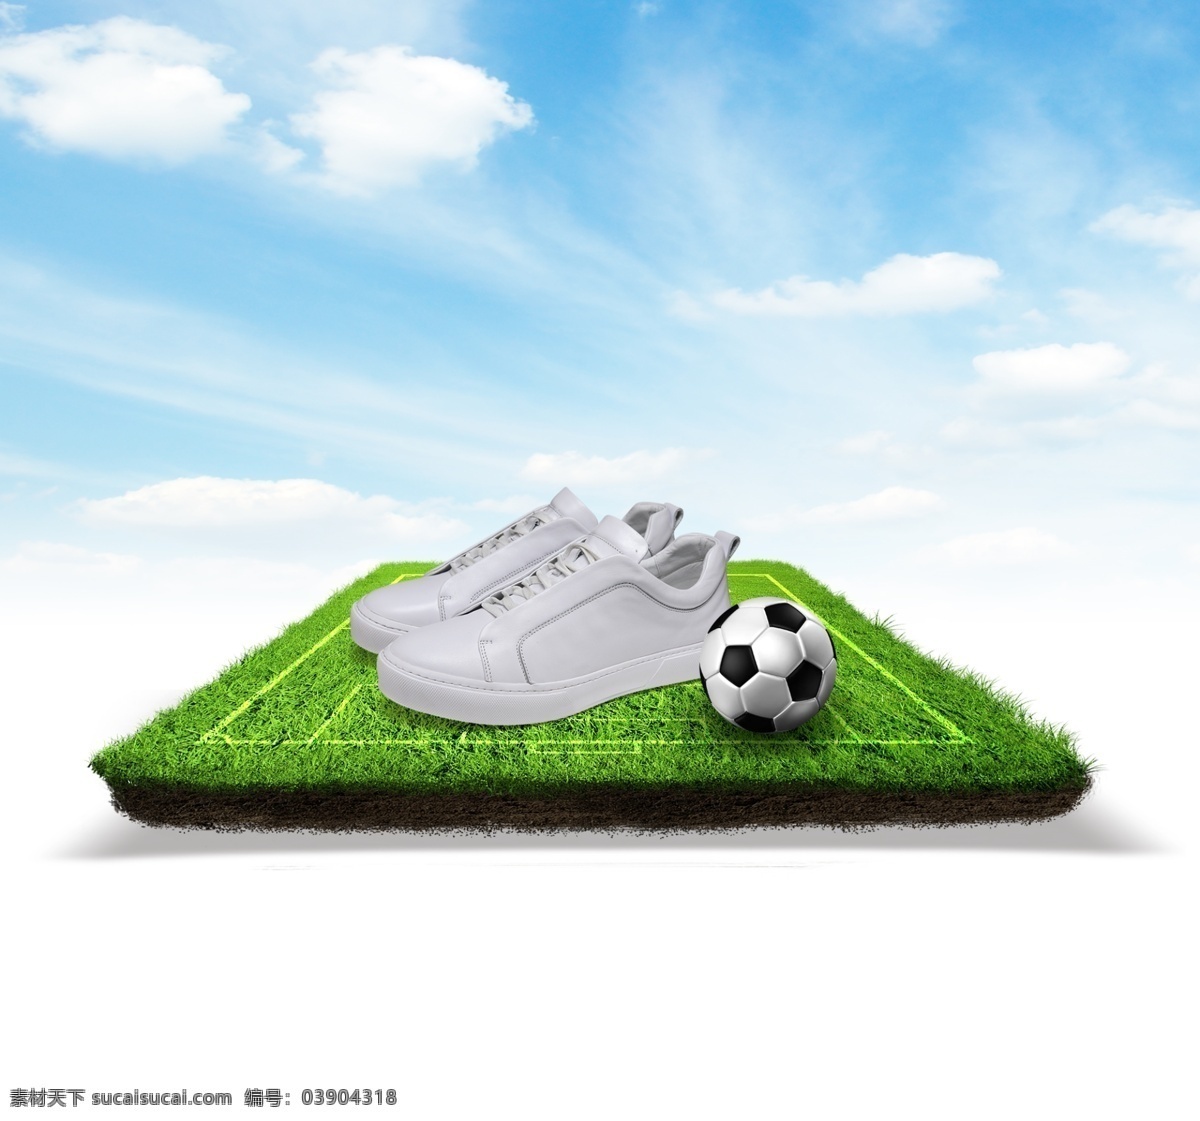 欧洲杯 球场 足球鞋 足球 鞋 天空 悬浮球场 合成球场 合成海报 绘制球场海报 其他psd 分层